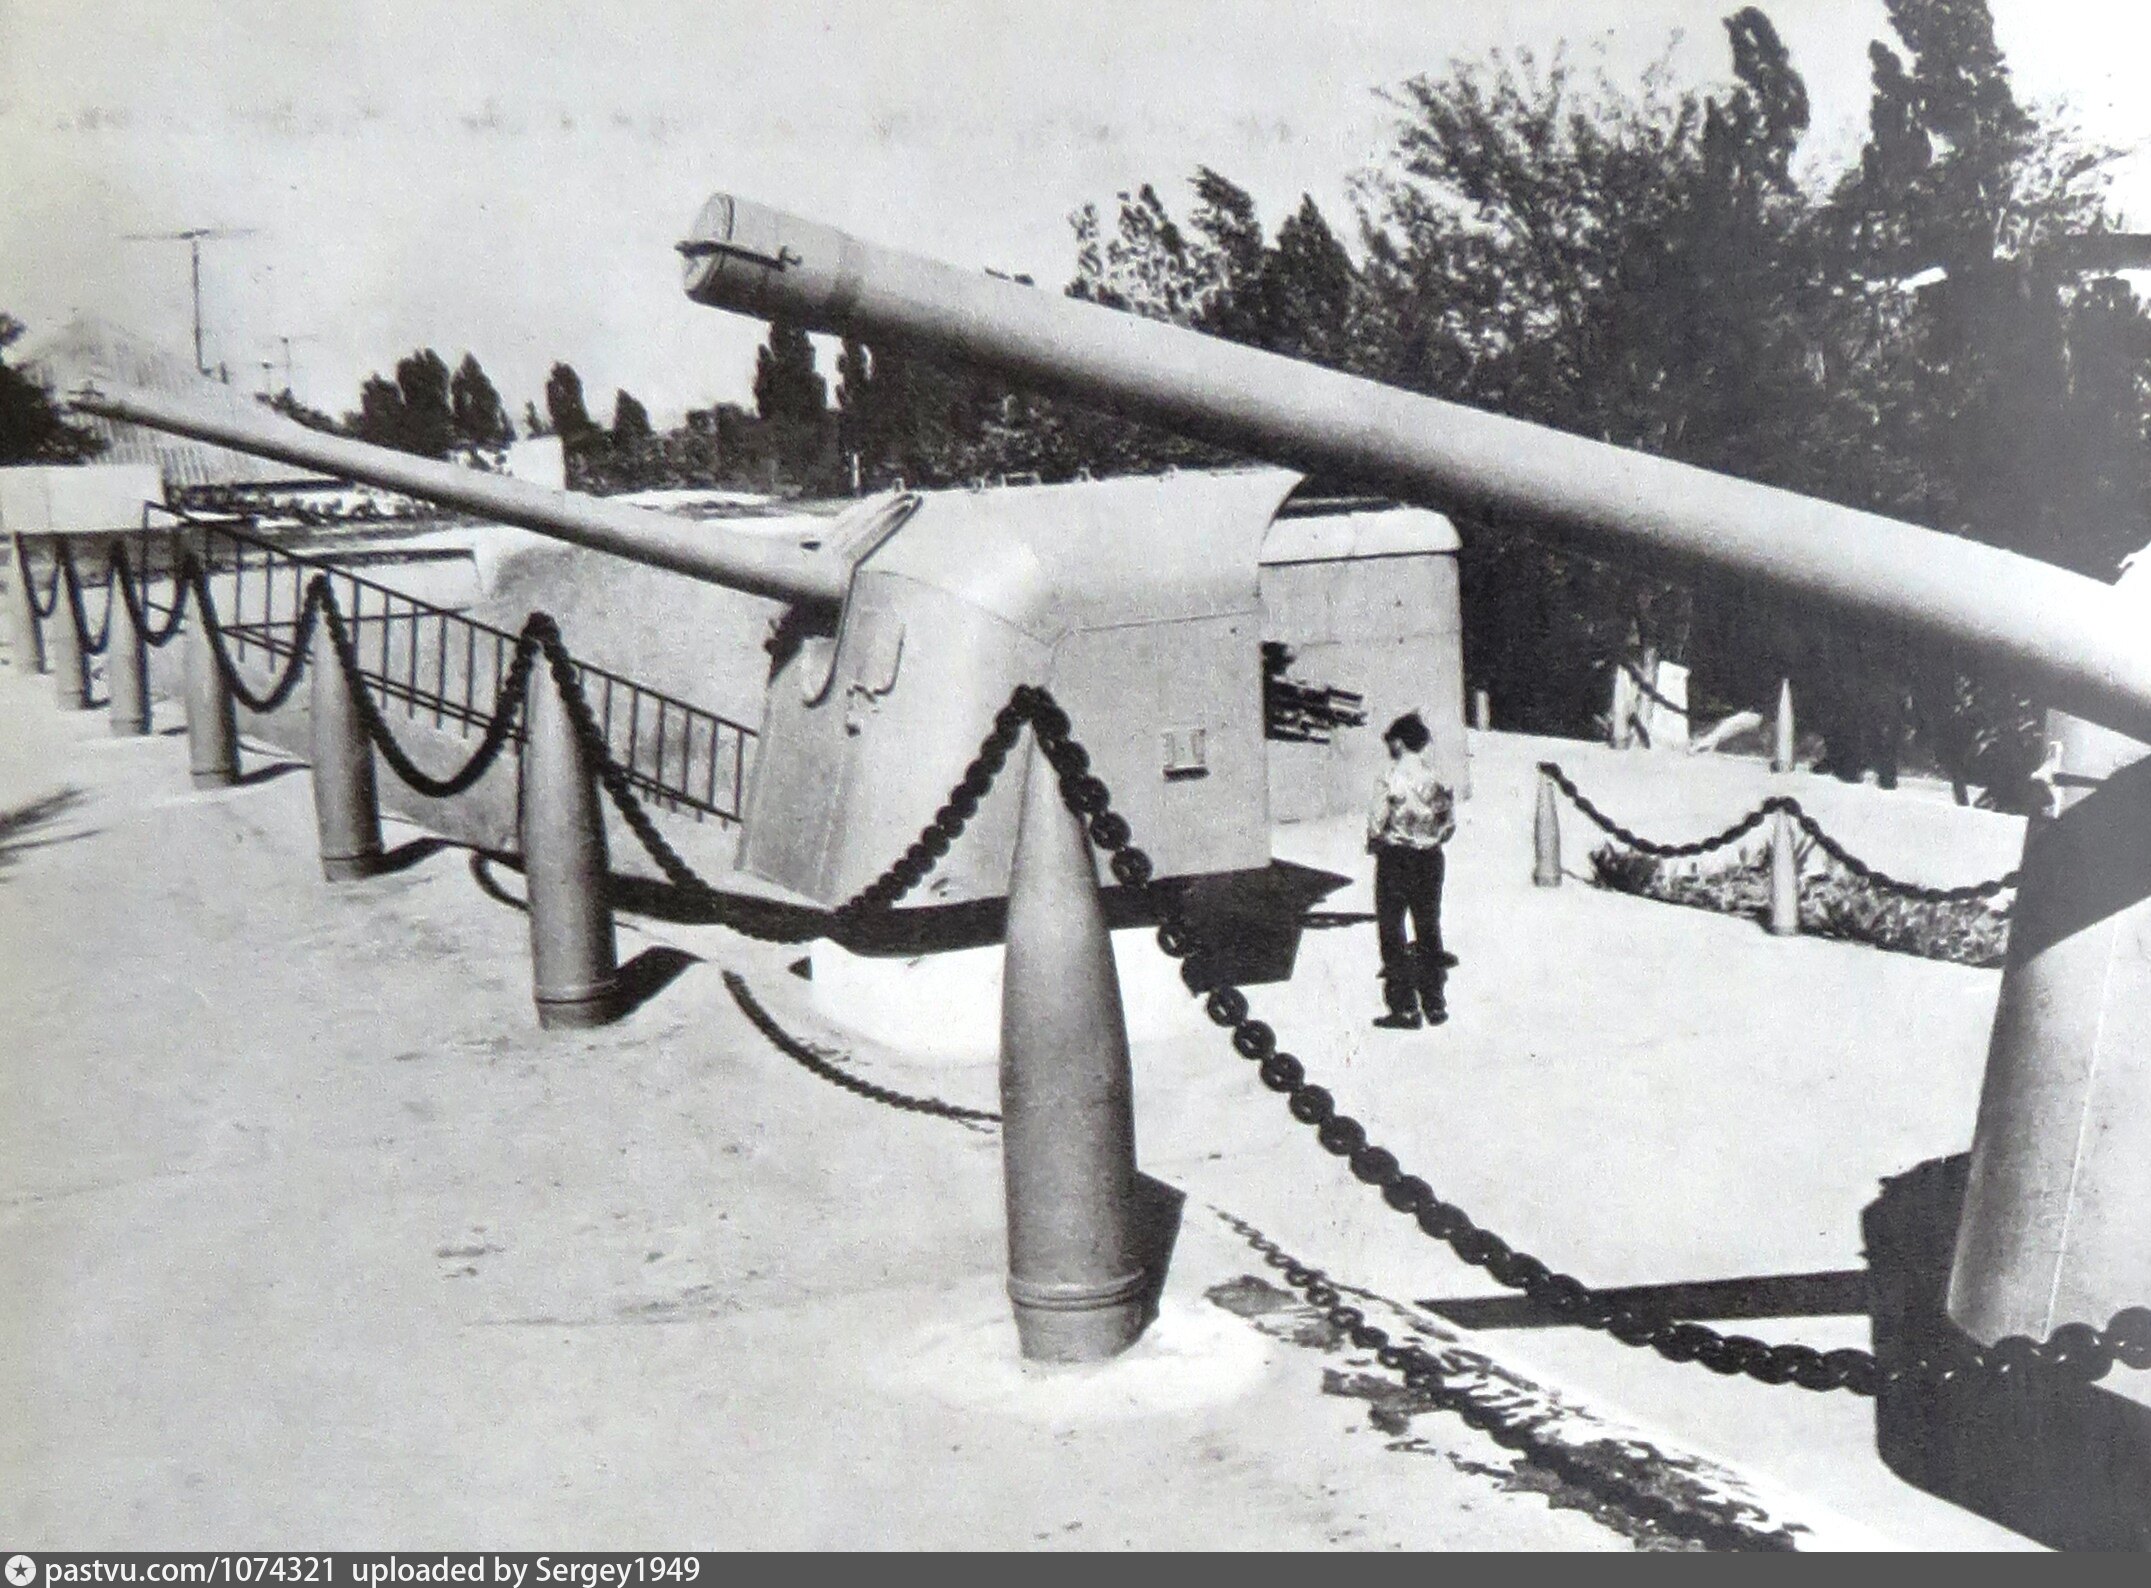 Береговая 100. 152-Мм орудия береговой батареи № 569. Береговое орудия Ленинграда. См-4-1 орудие Береговое.